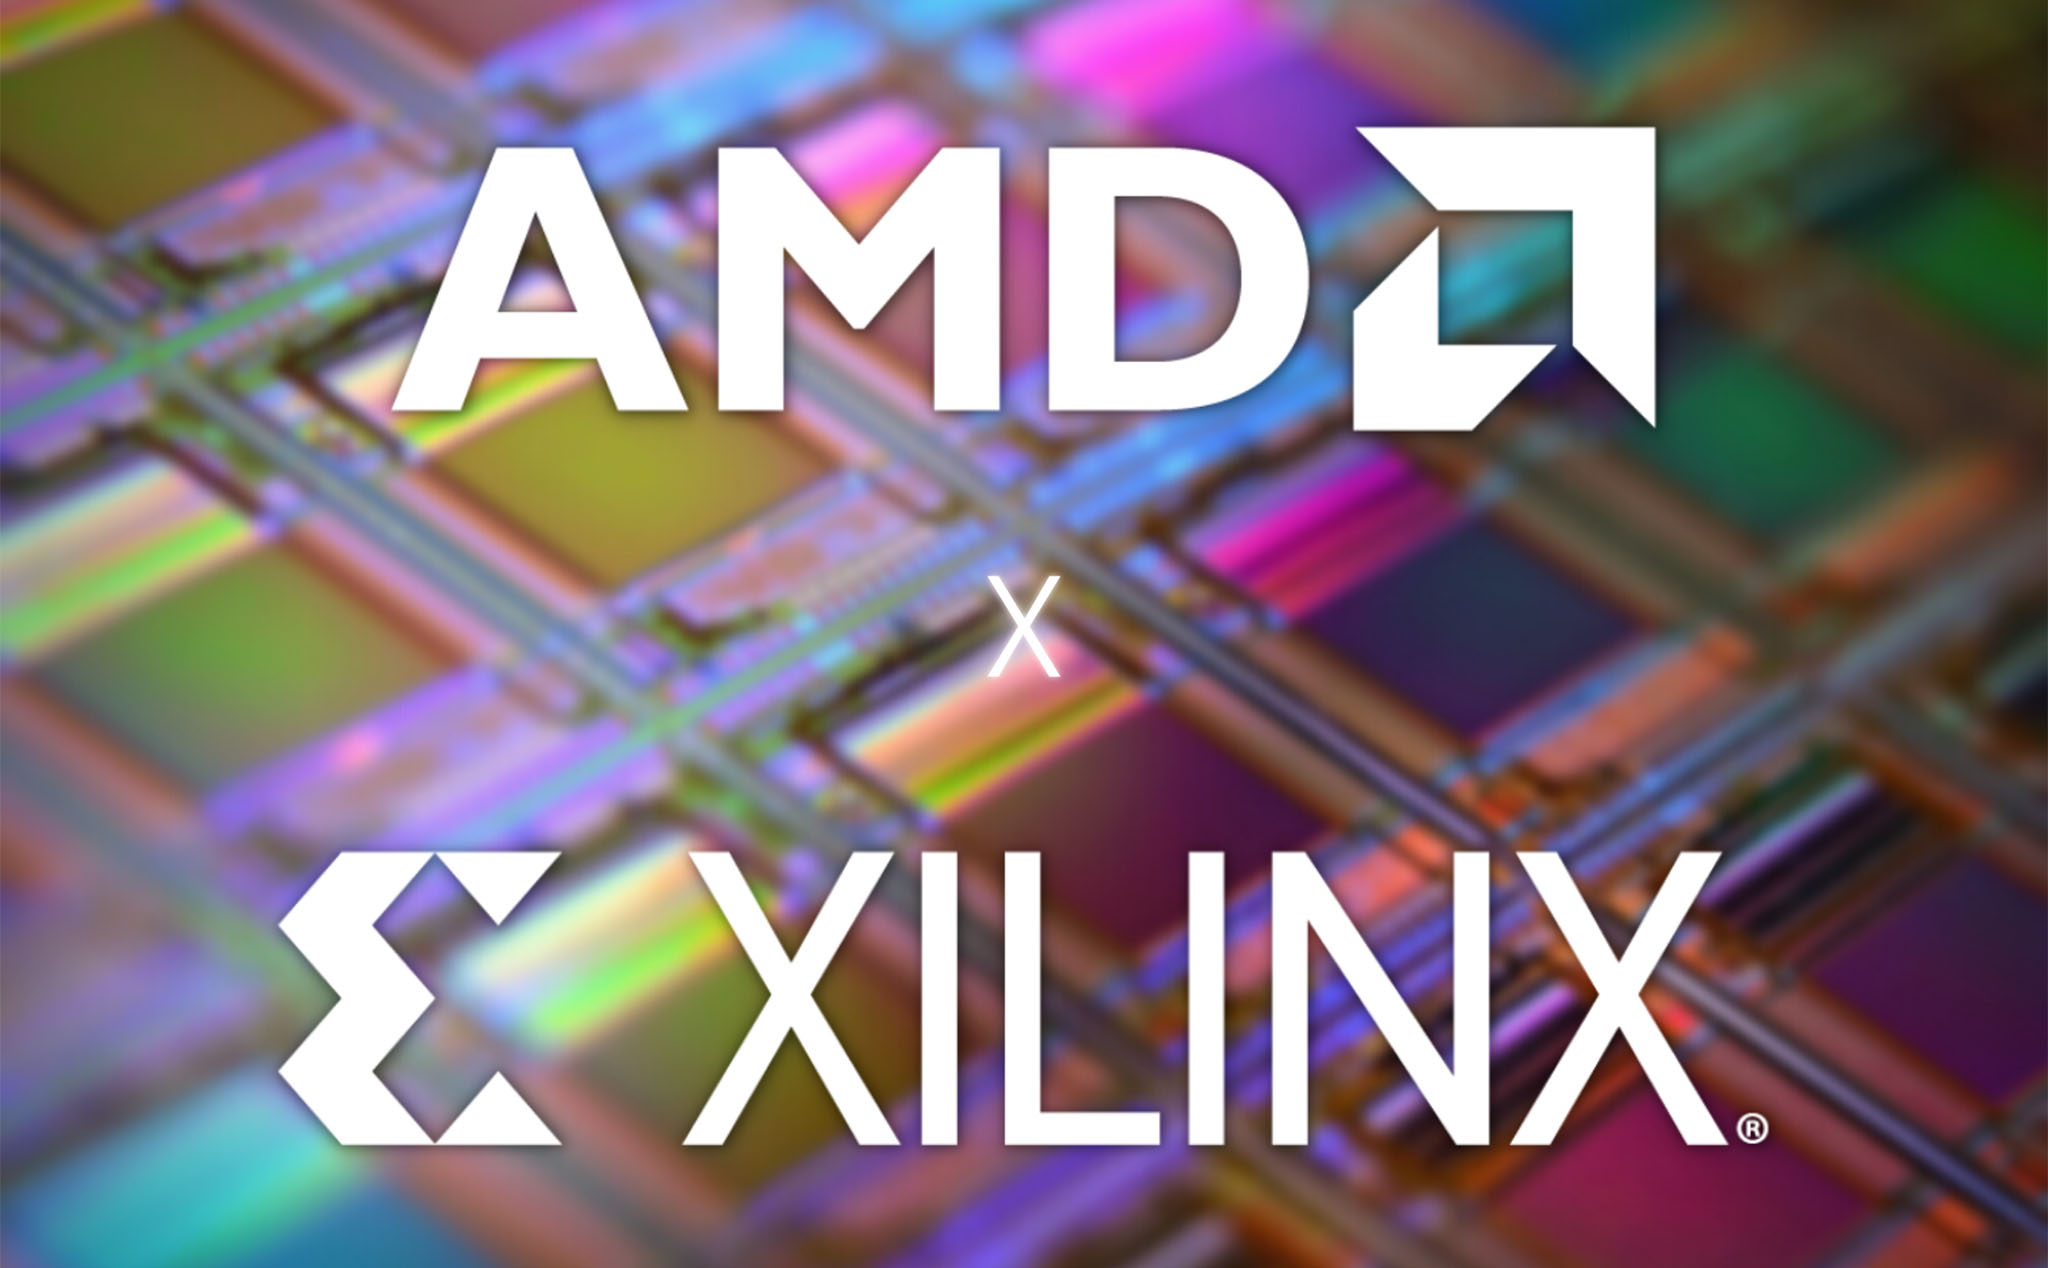 AMD hoàn tất thương vụ mua lại Xilinx, trị giá ước tính 50 tỉ USD